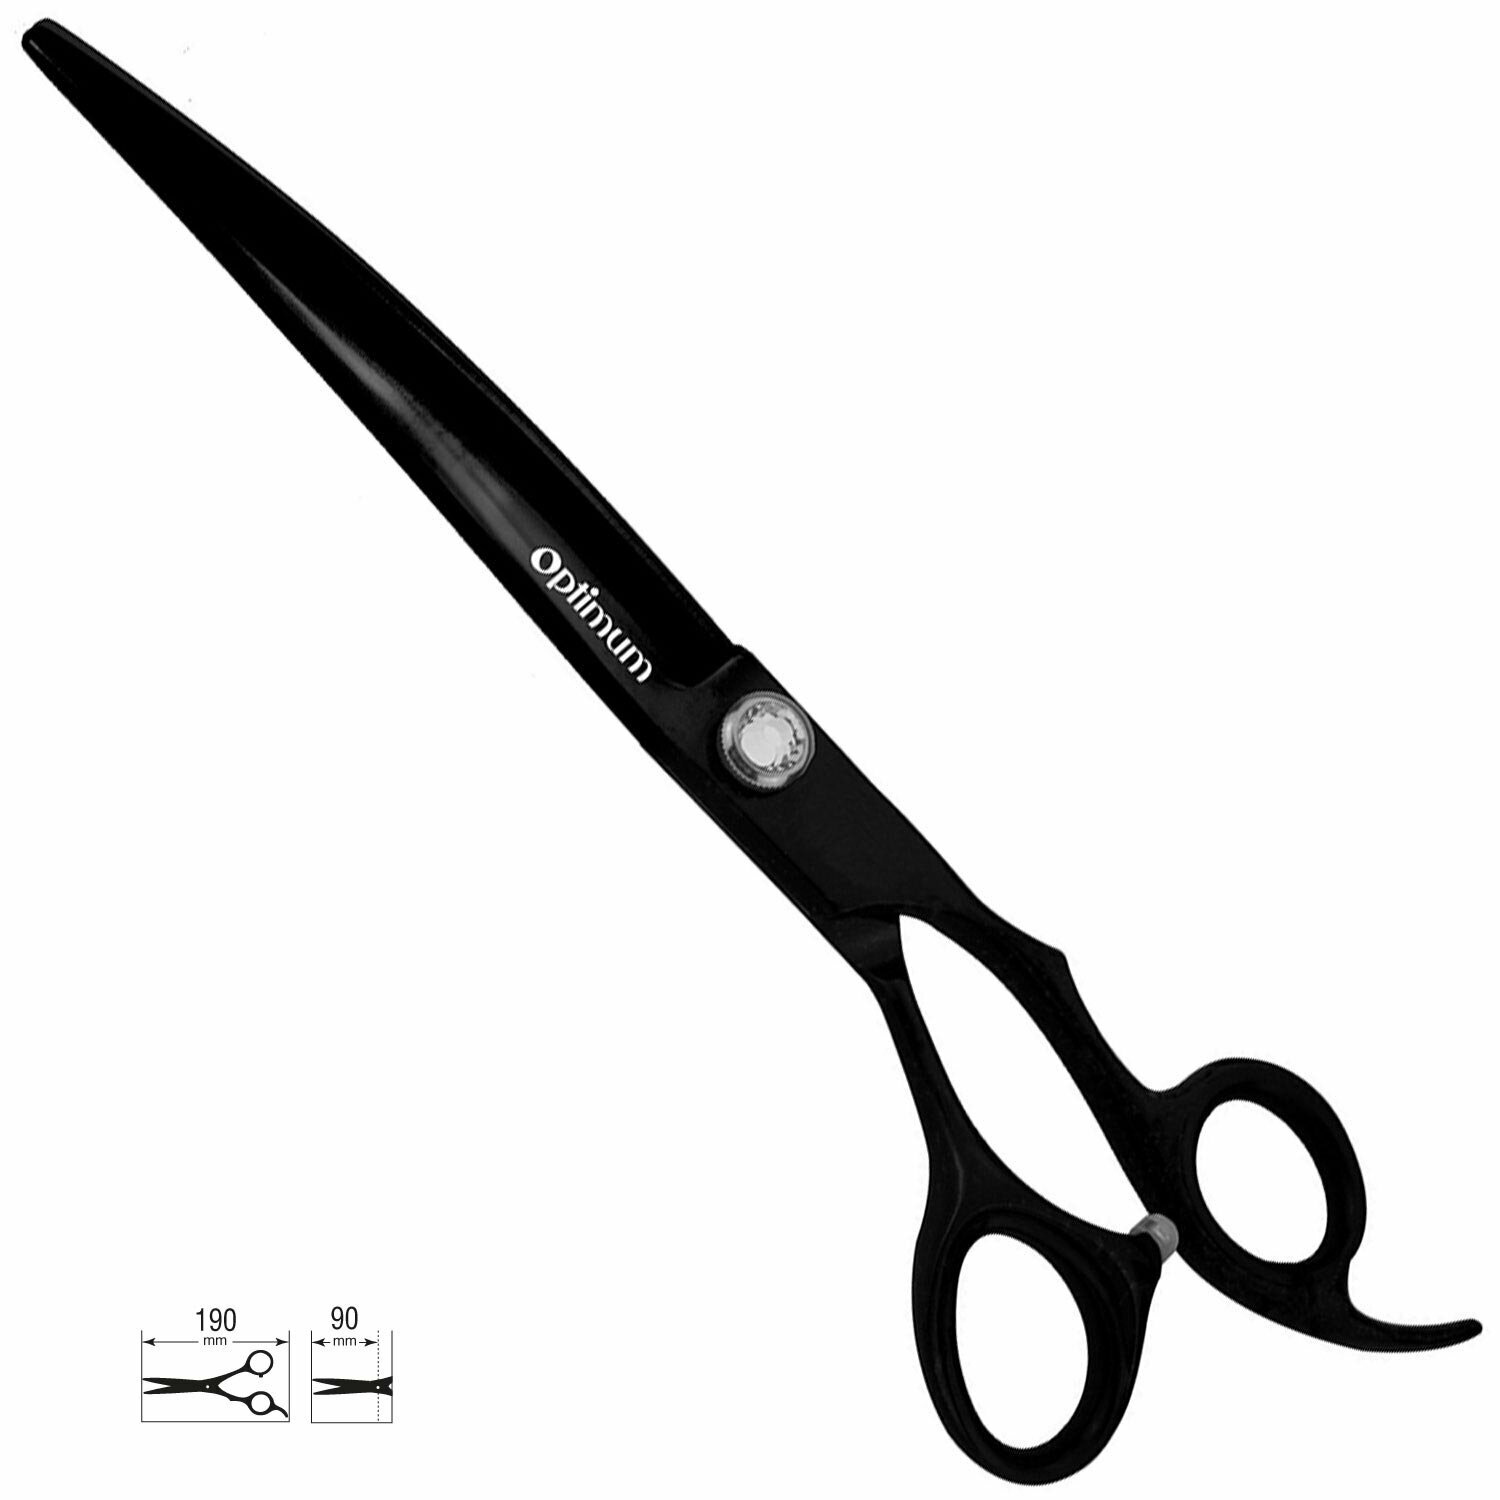 Japan steel hair scissors 19 cm curved